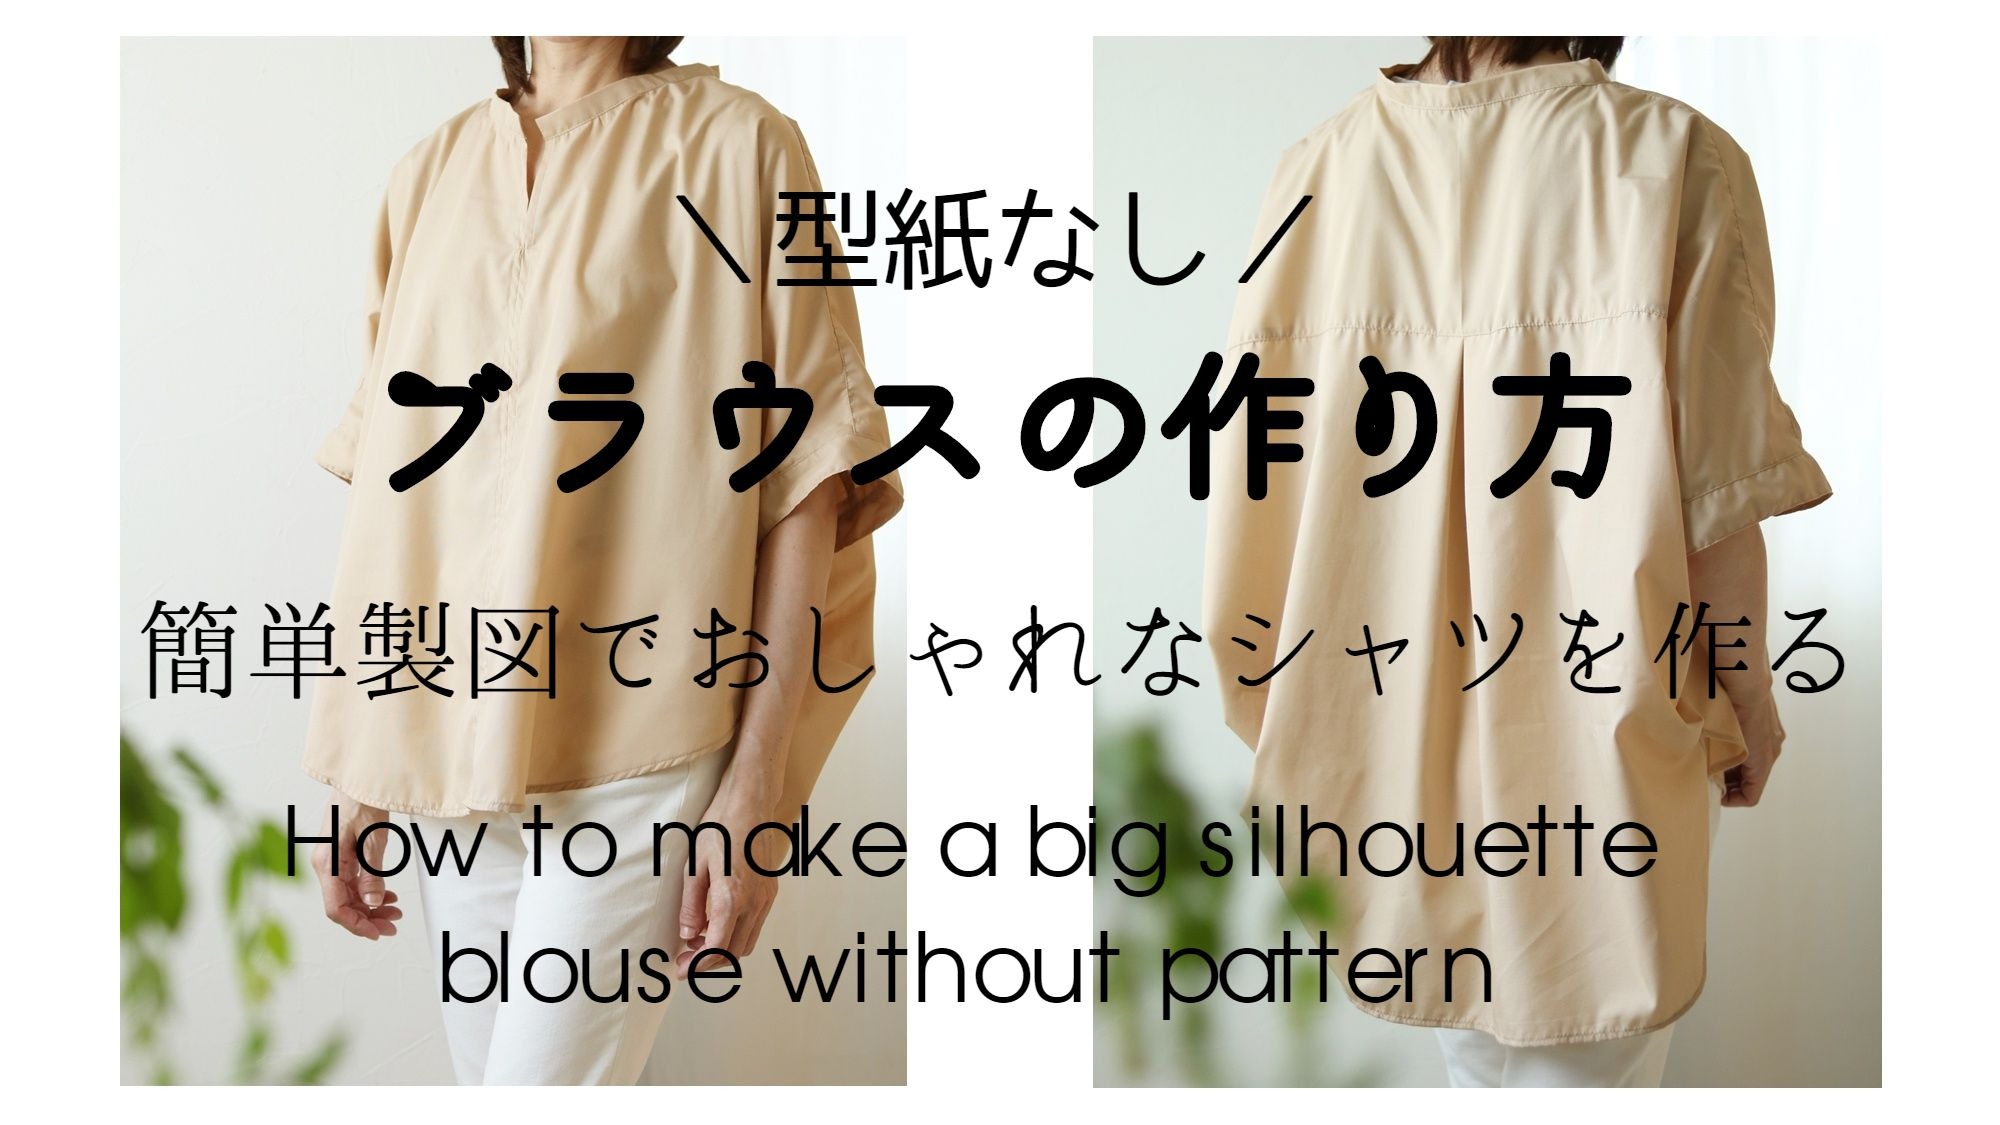 簡単シャツの作り方 型紙なしで作るビッグシルエットブラウス 製図 動画付き 洋裁好きさんのための洋裁ブログ